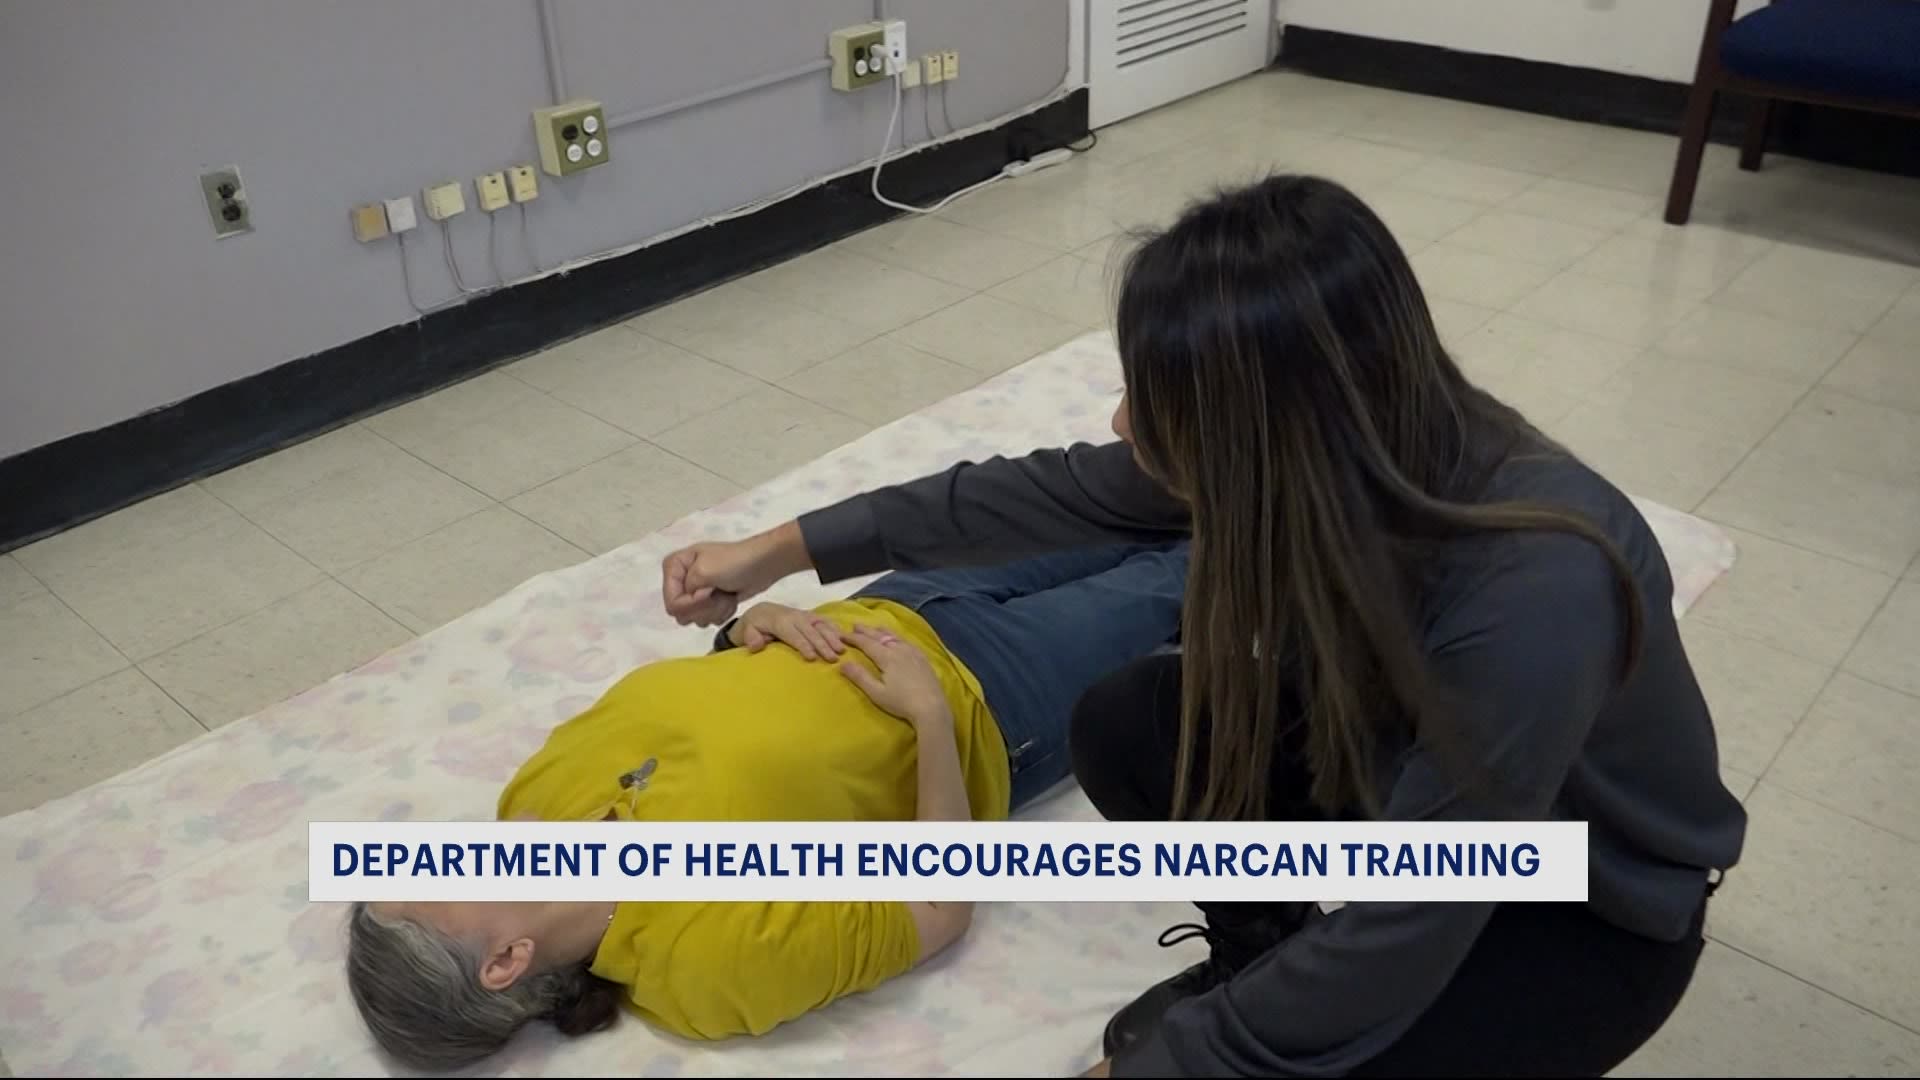 社区卫生工作者向纽约居民提供纳尔康培训以帮助挽救生命